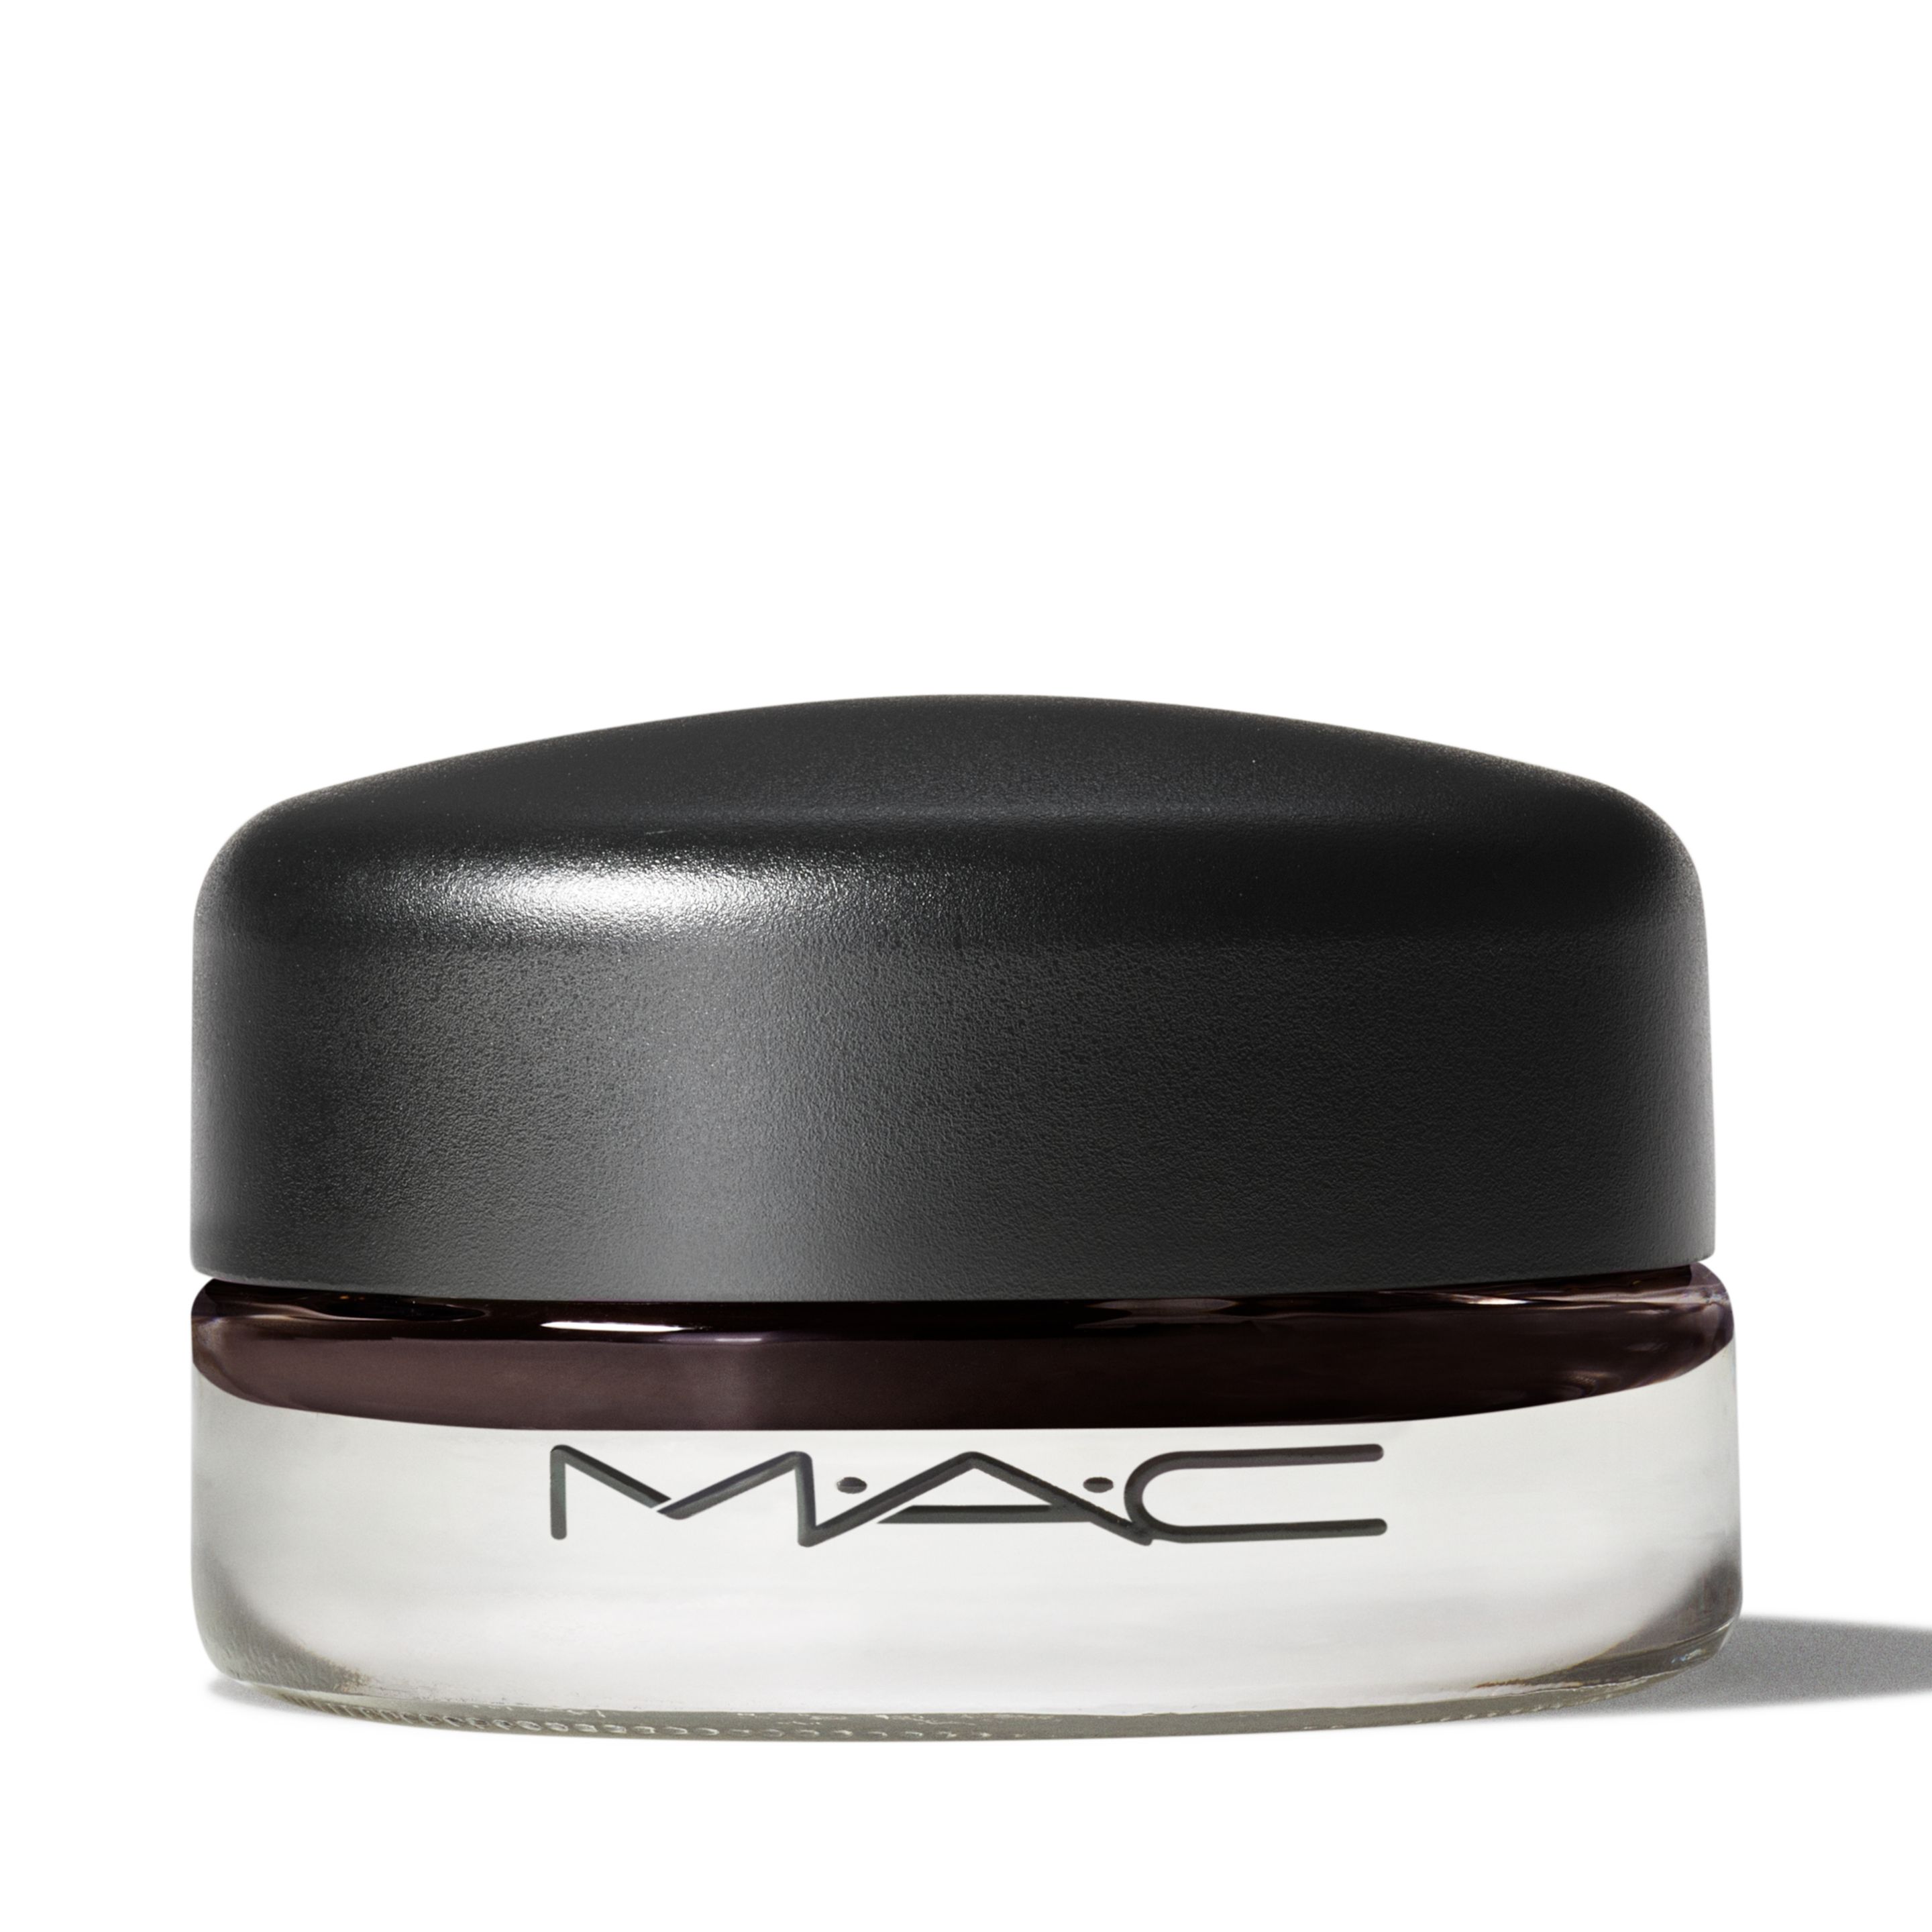 Тени для век MAC Pro Longwear Paint Pot кремовые, Black Mirror, 5 г тени для век mac pro longwear paint pot кремовые it s fabstract 5 г